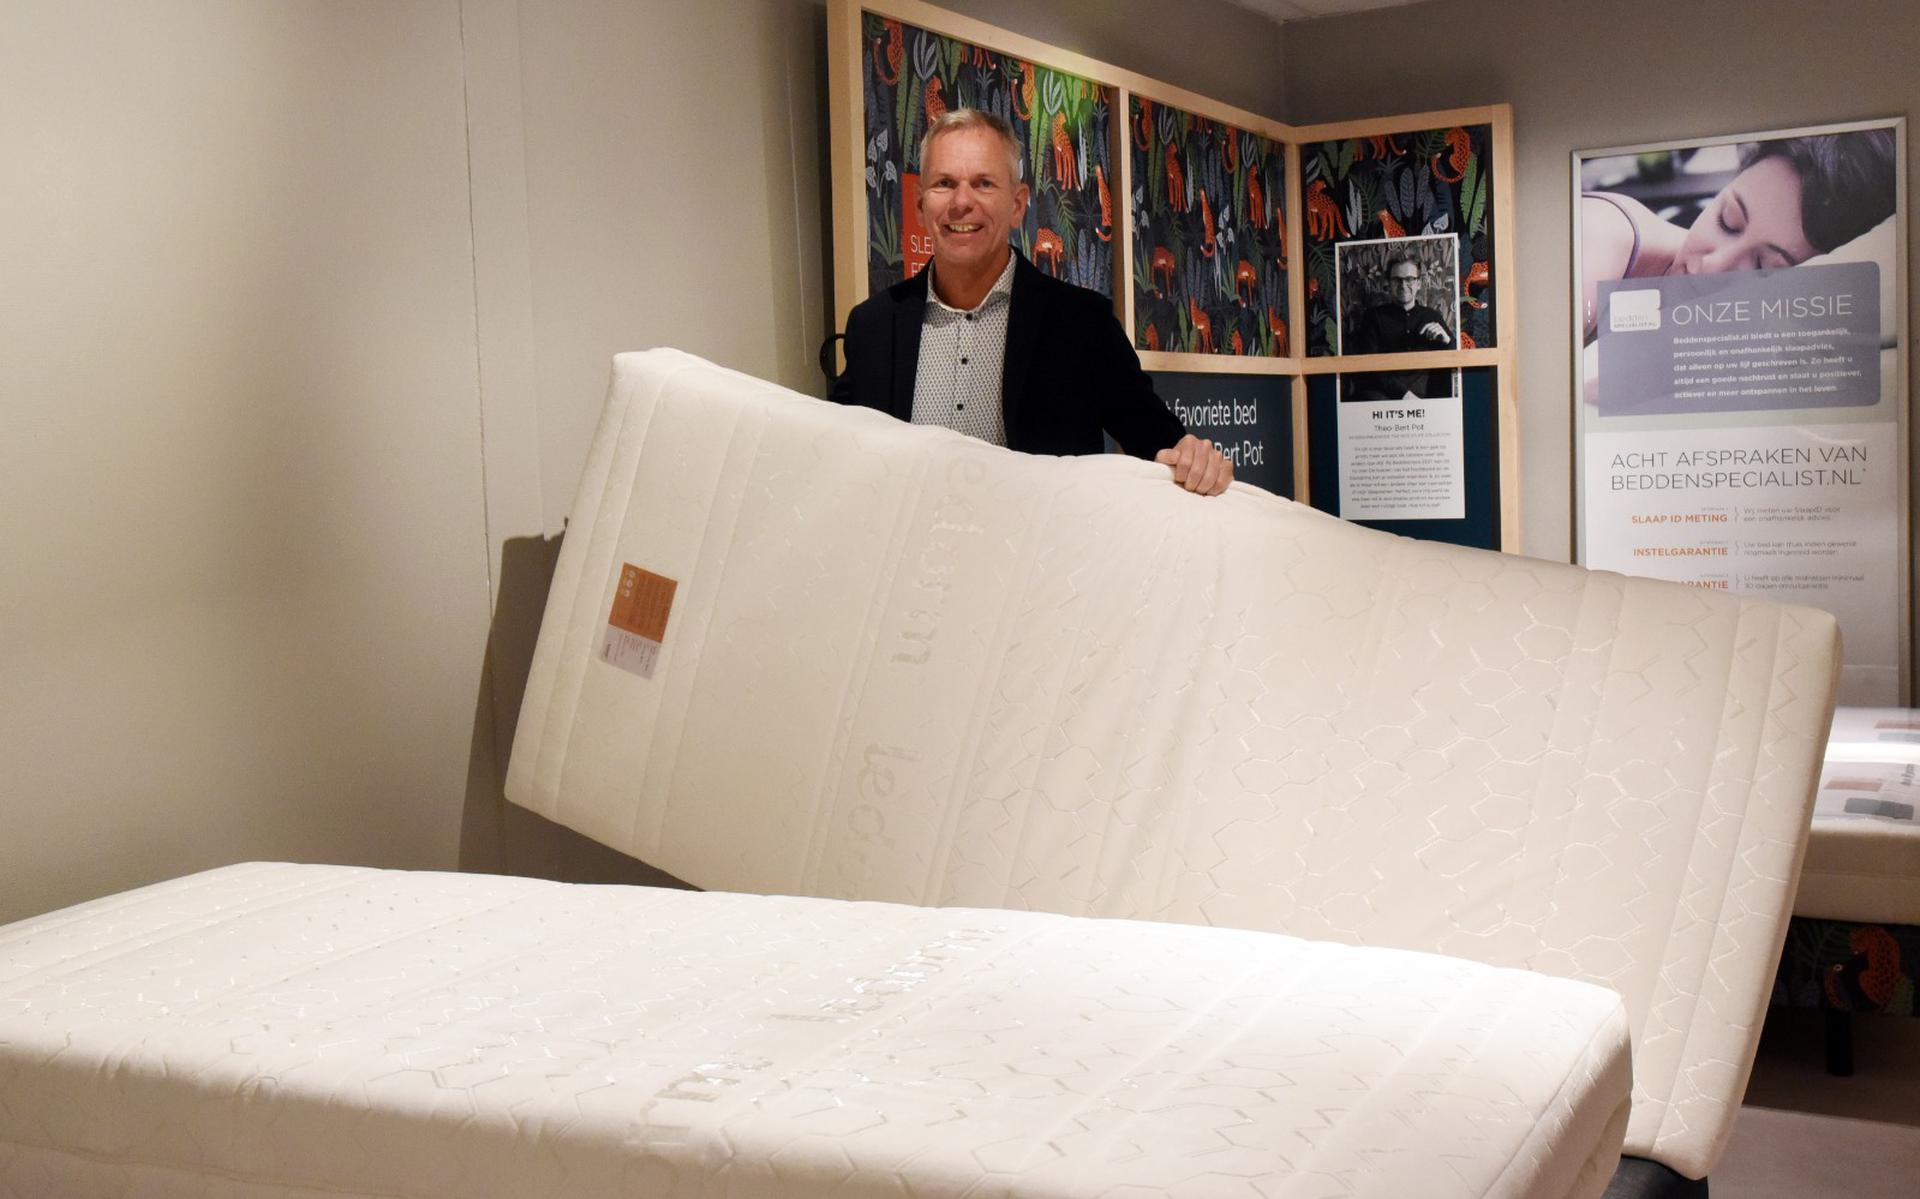 Jeroen Huisman wil met de matrasinruilactie iedereen aanmoedigen om hun oude matras in te ruilen voor een betere nachtrust.